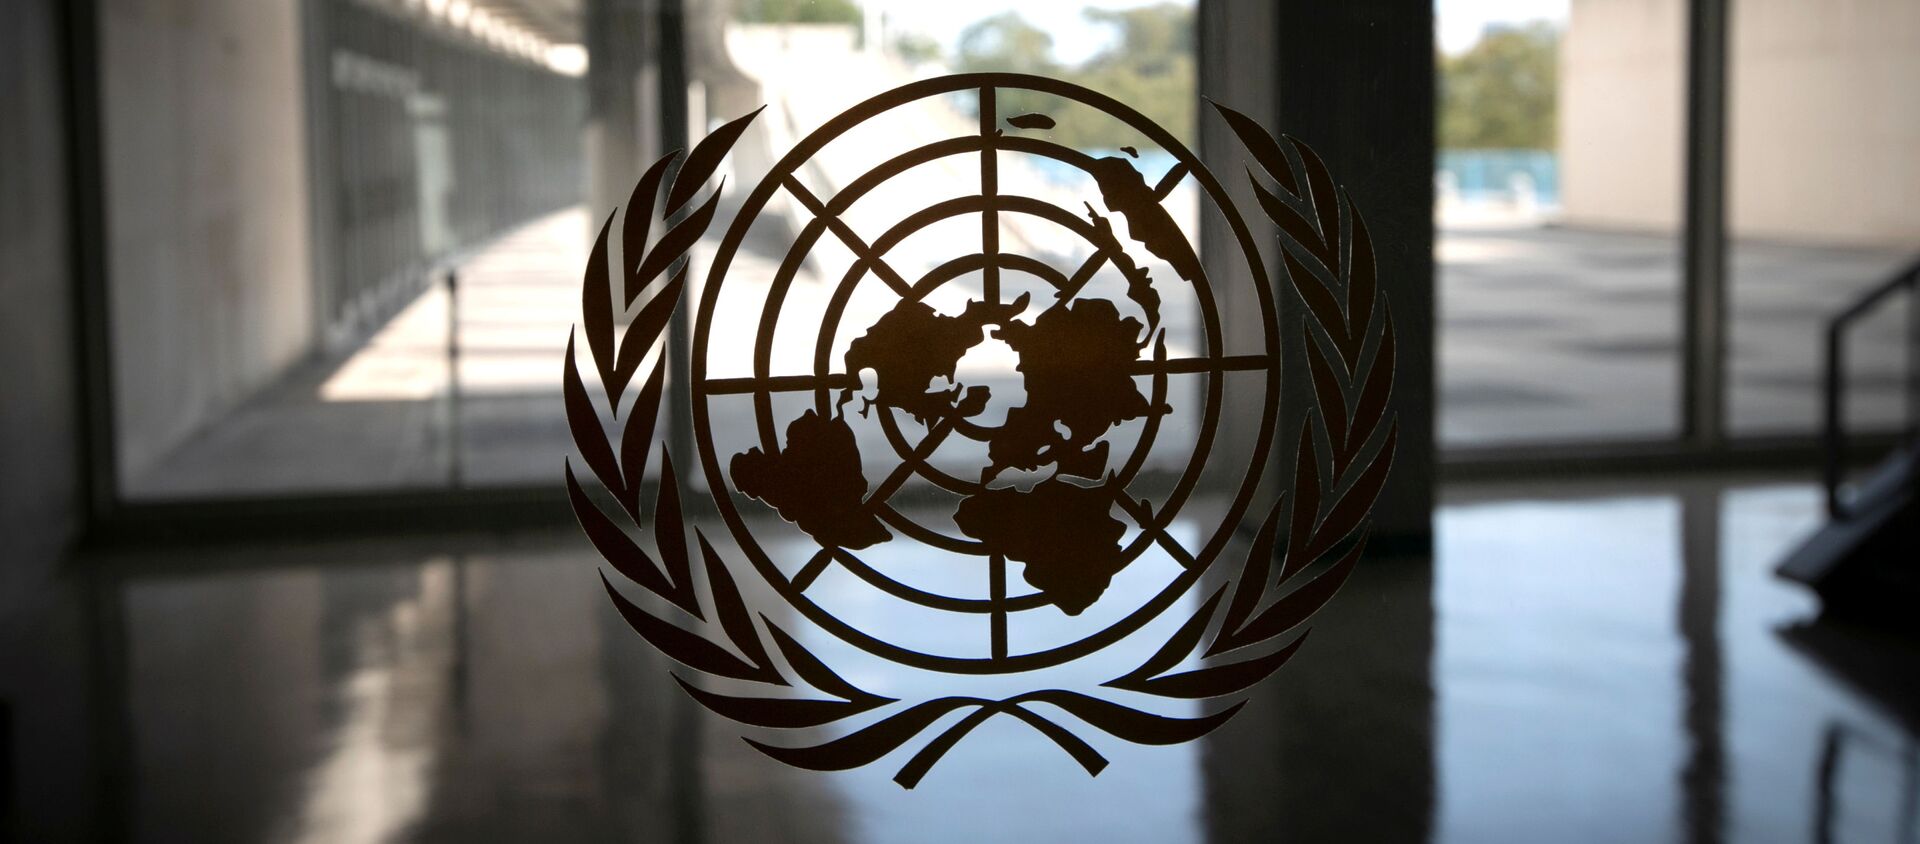 Лого Уједињених нација на улазу у седиште организације у Њујорку - Sputnik Србија, 1920, 16.12.2020